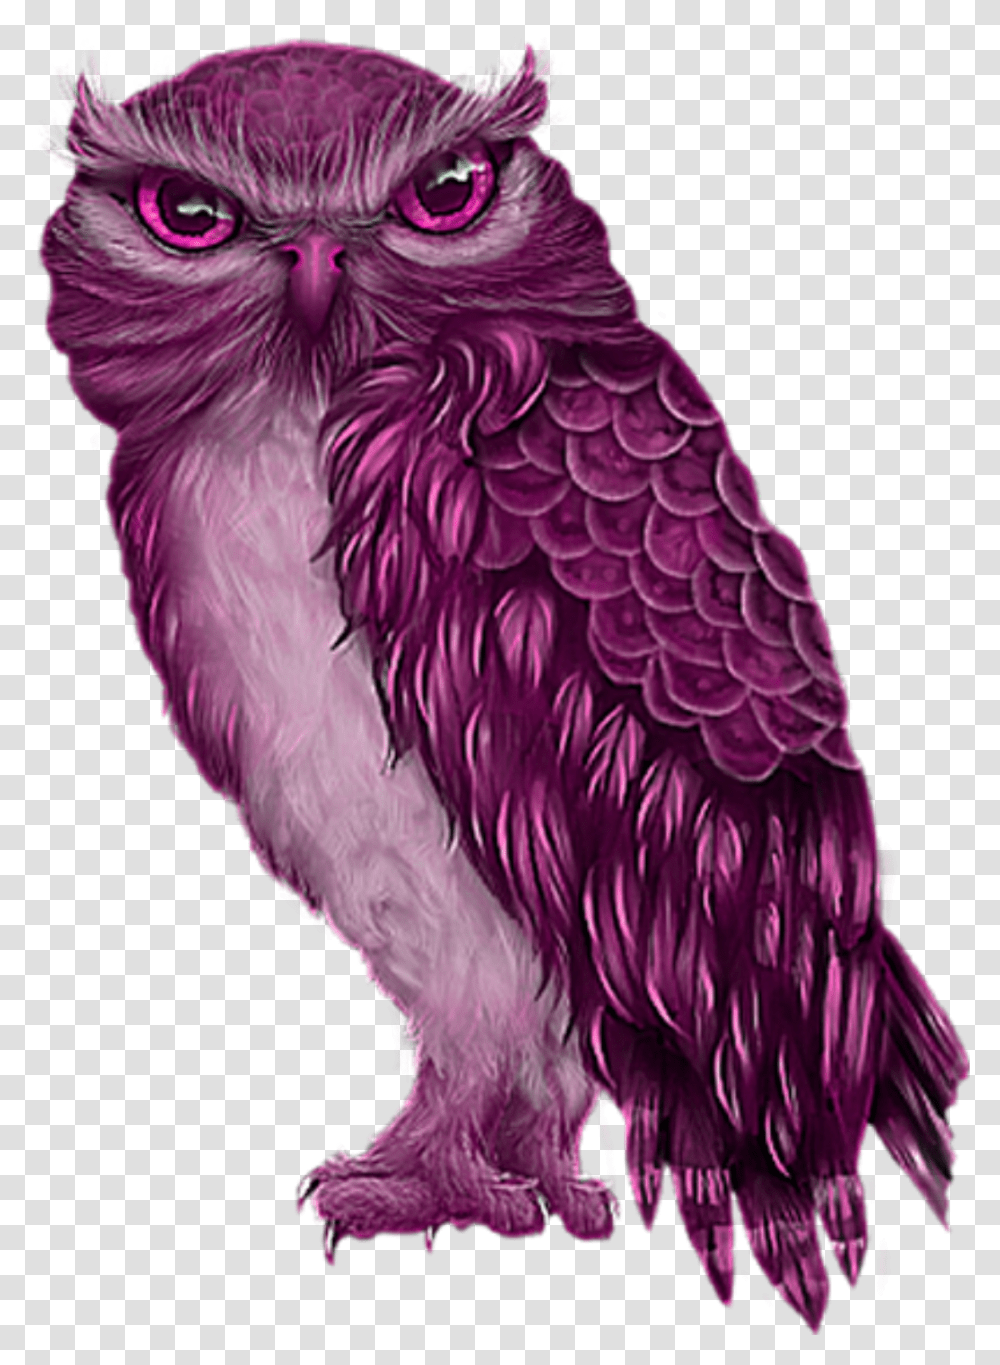 Freetoeddit Pink Owl Owl, Bird, Animal, Beak, Chicken Transparent Png